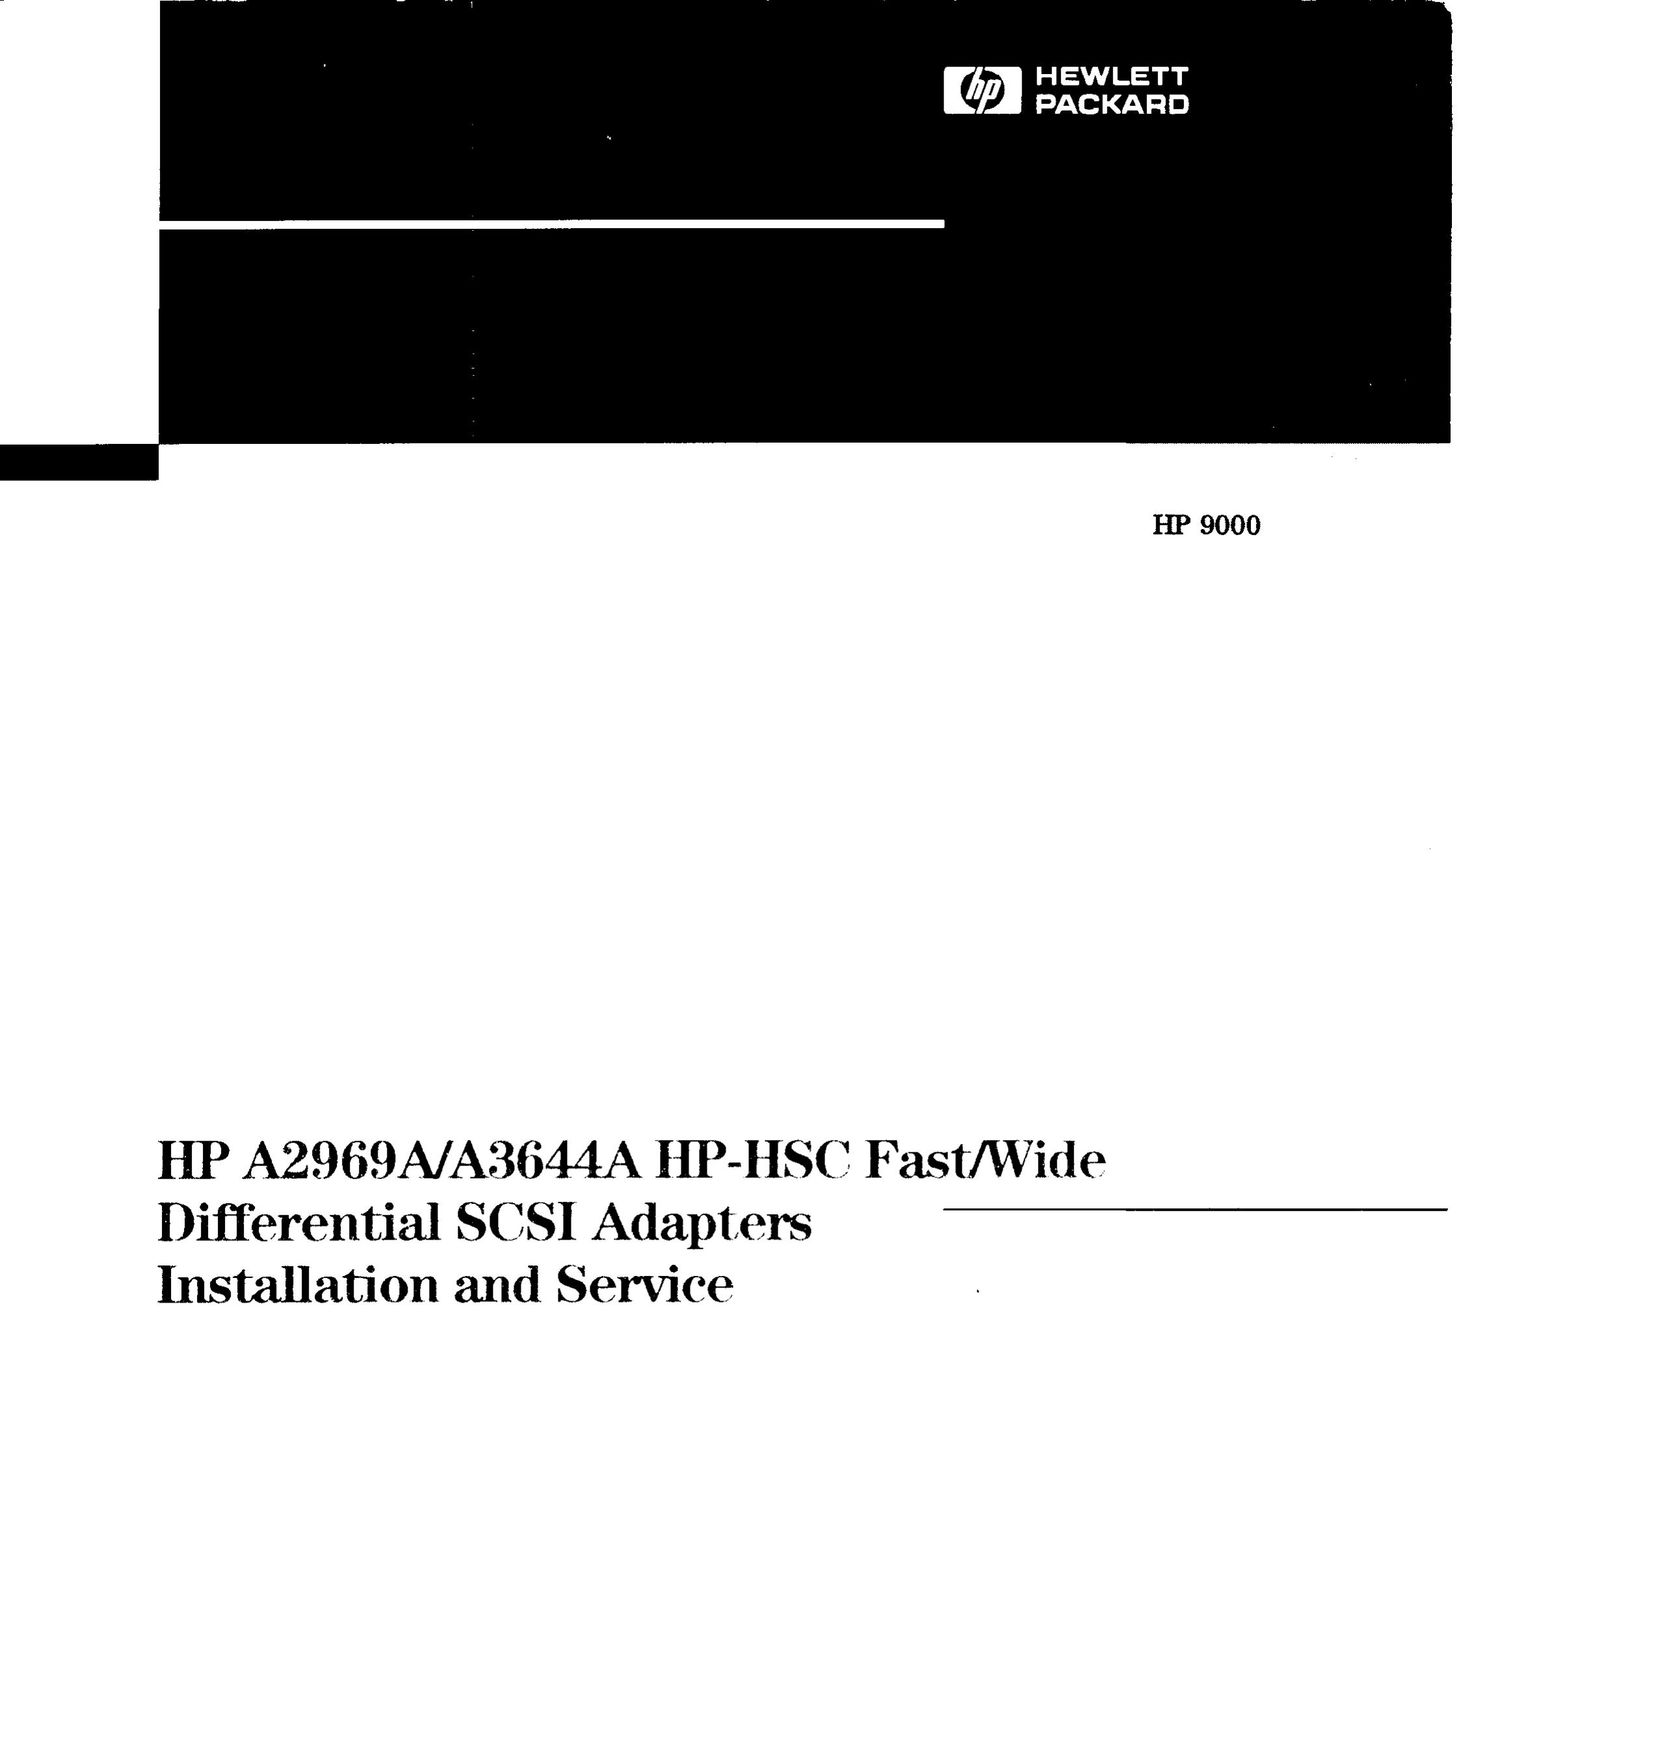 HP (Hewlett-Packard) A2969A Network Card User Manual